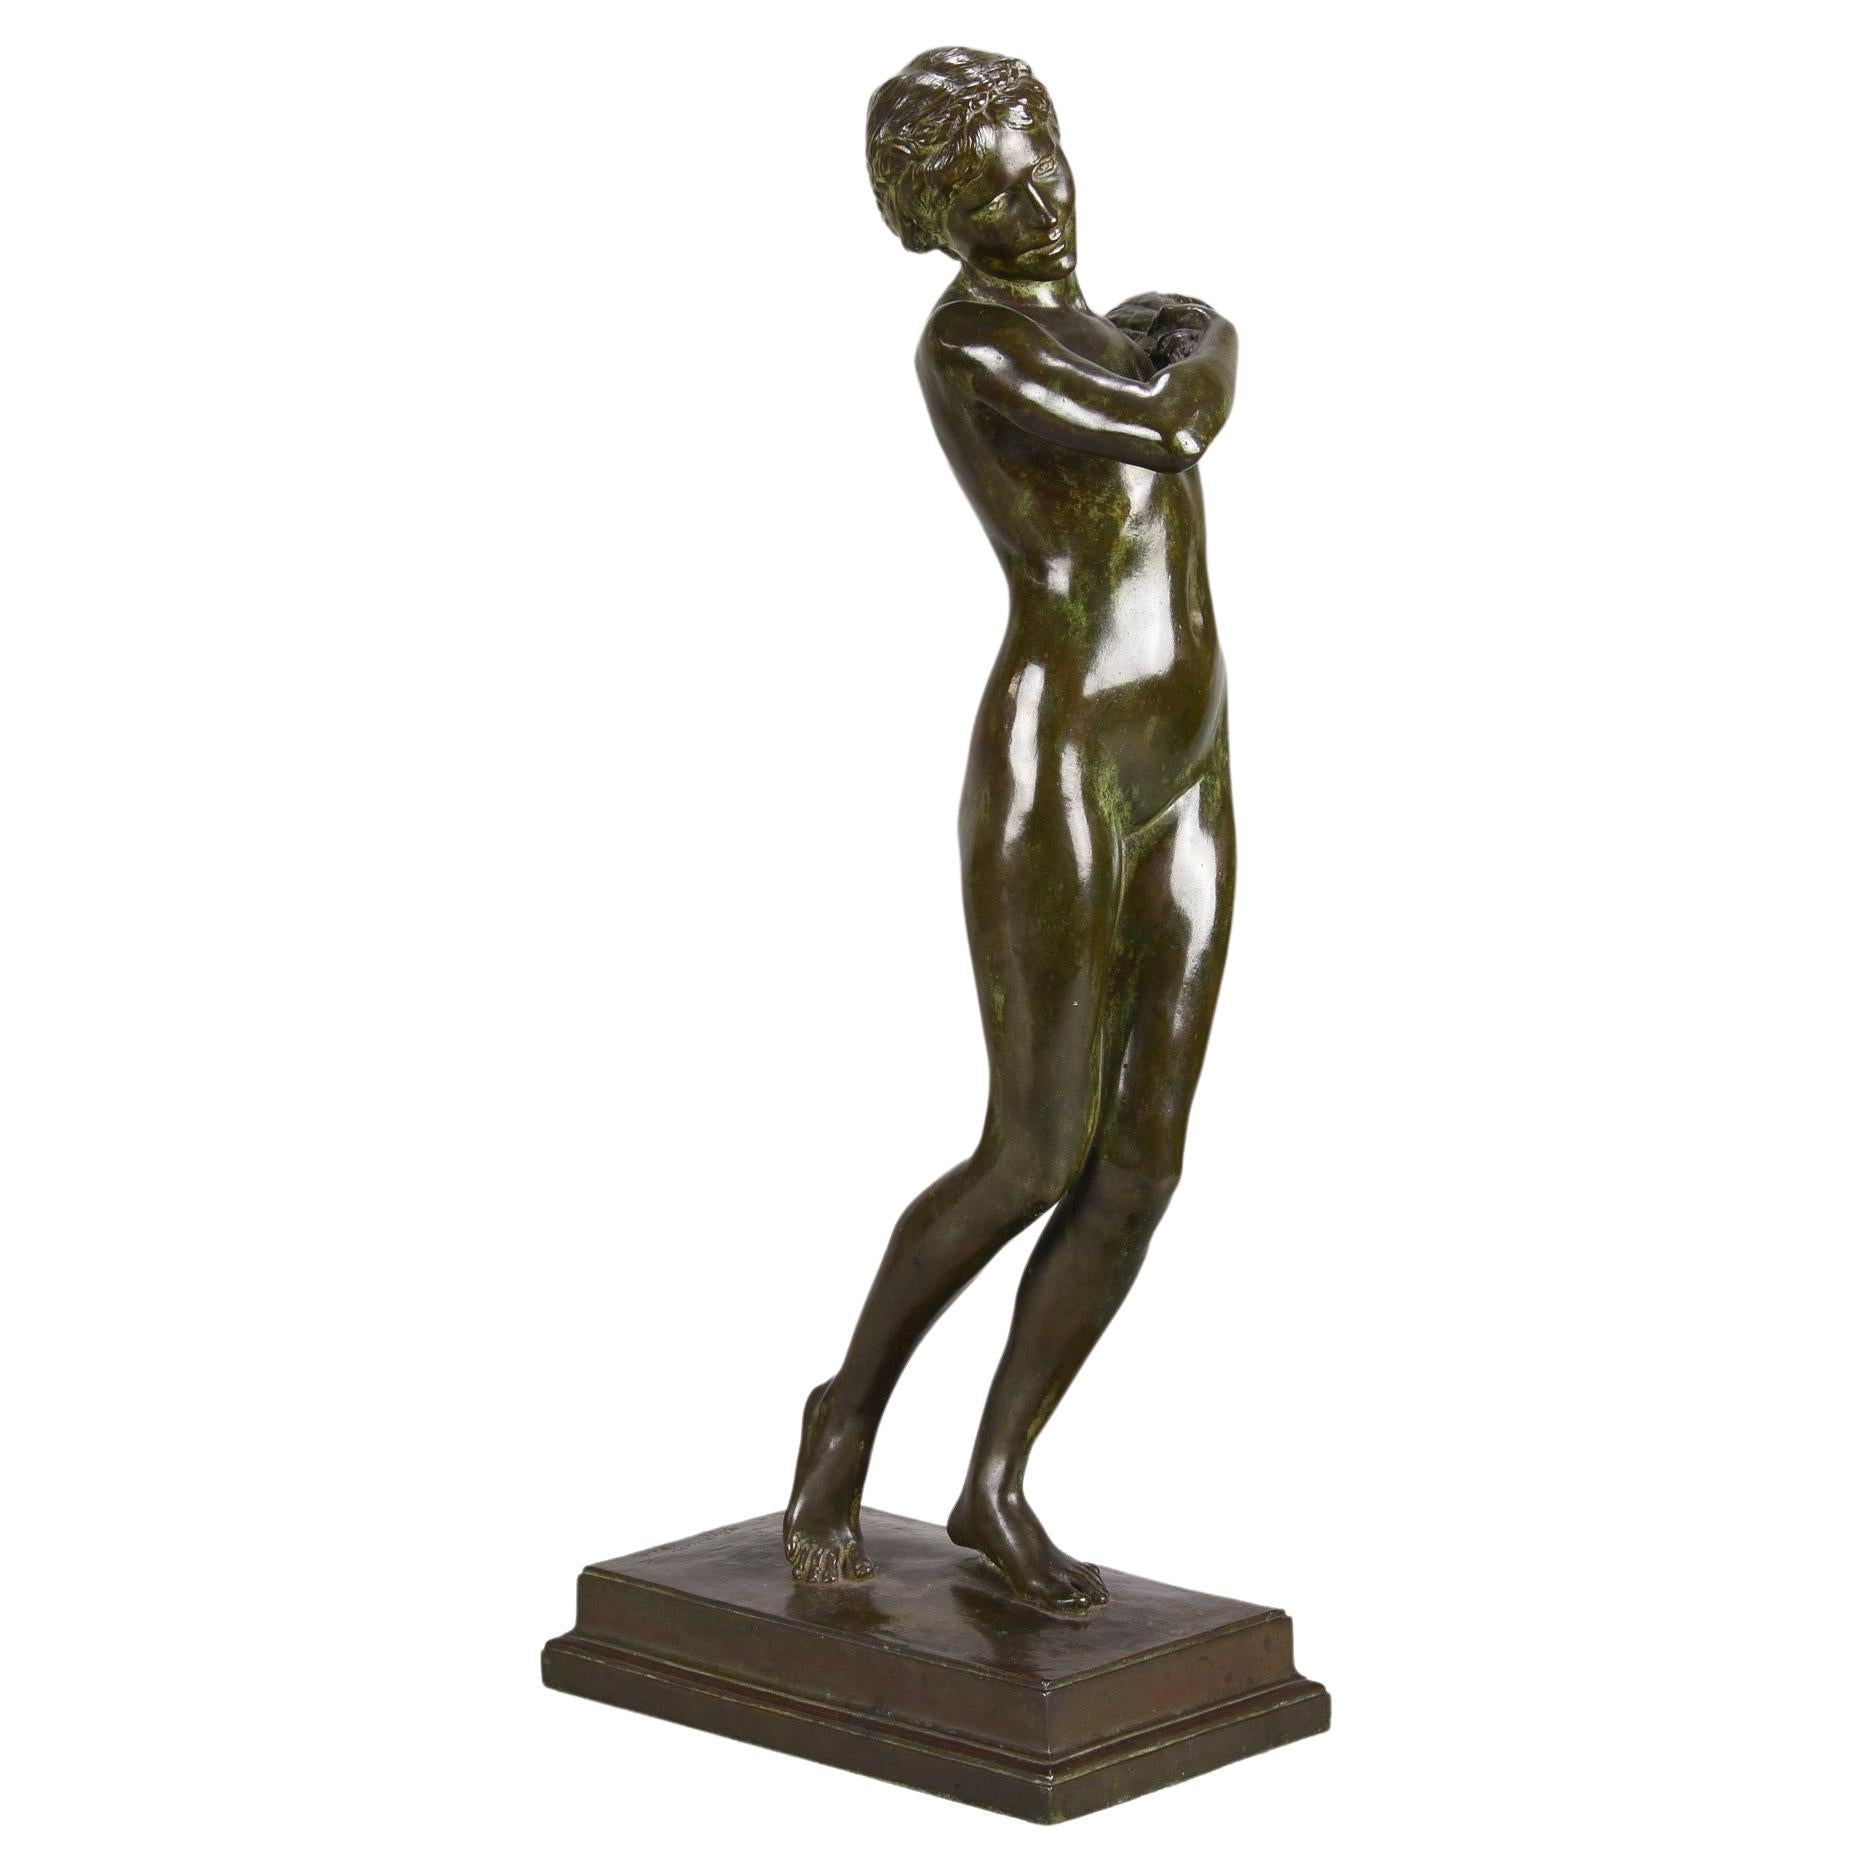 Bronze Art Deco Sculpture Entitled "Harvest Girl" by Harold Brownsword